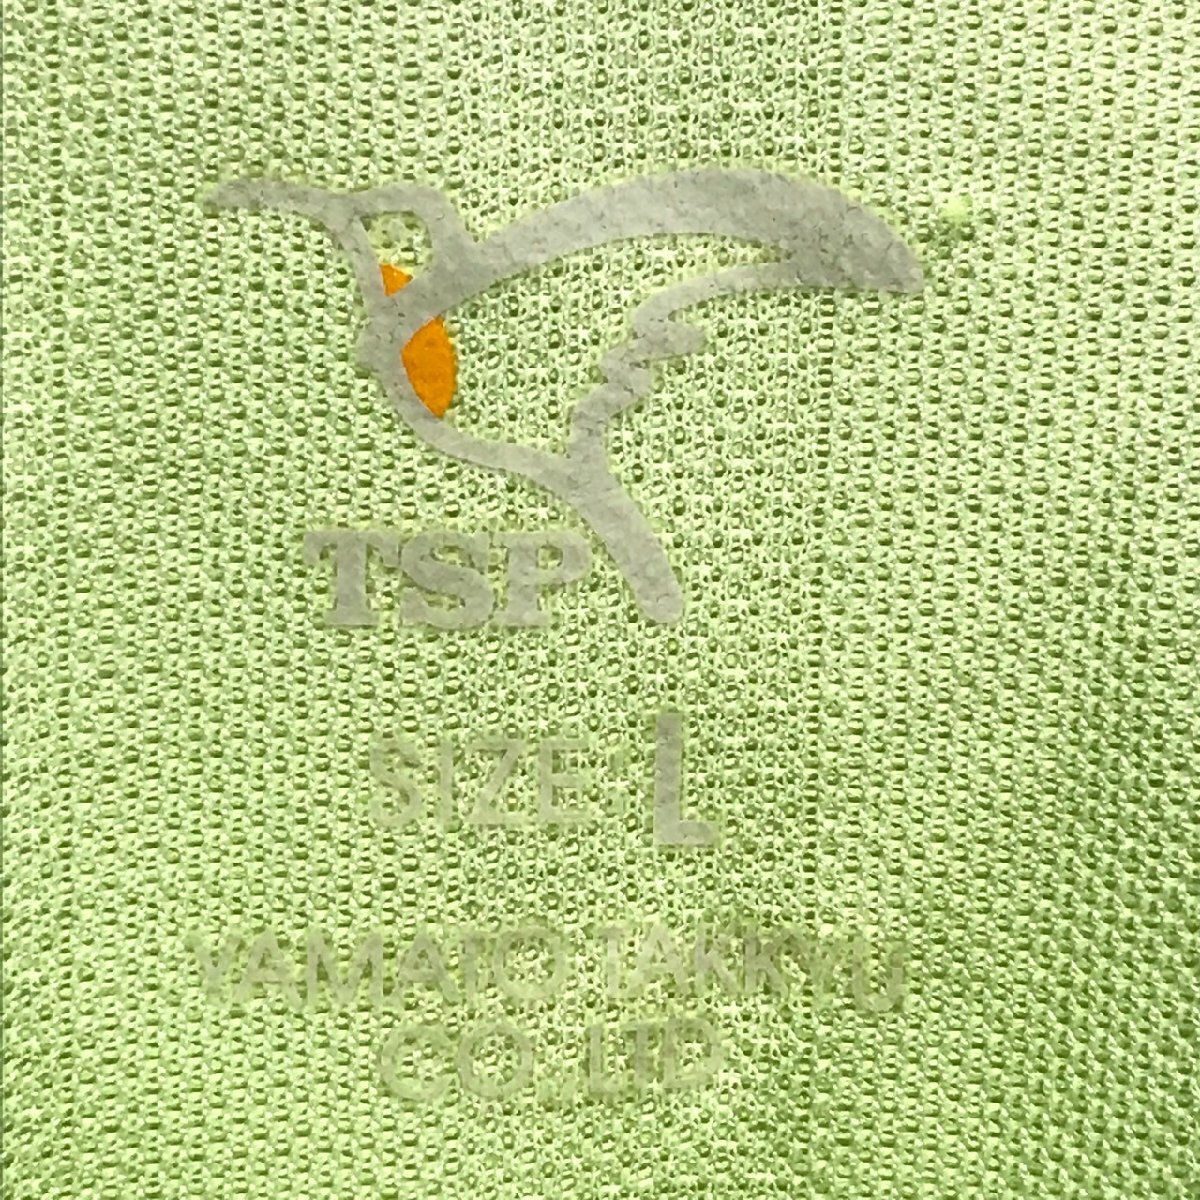 (^w^)b сделано в Японии YAMATO TAKKYU TSP форма рубашка-поло с коротким рукавом Yamato настольный теннис спорт одежда "дышит" скорость .. зеленый L 8729iE